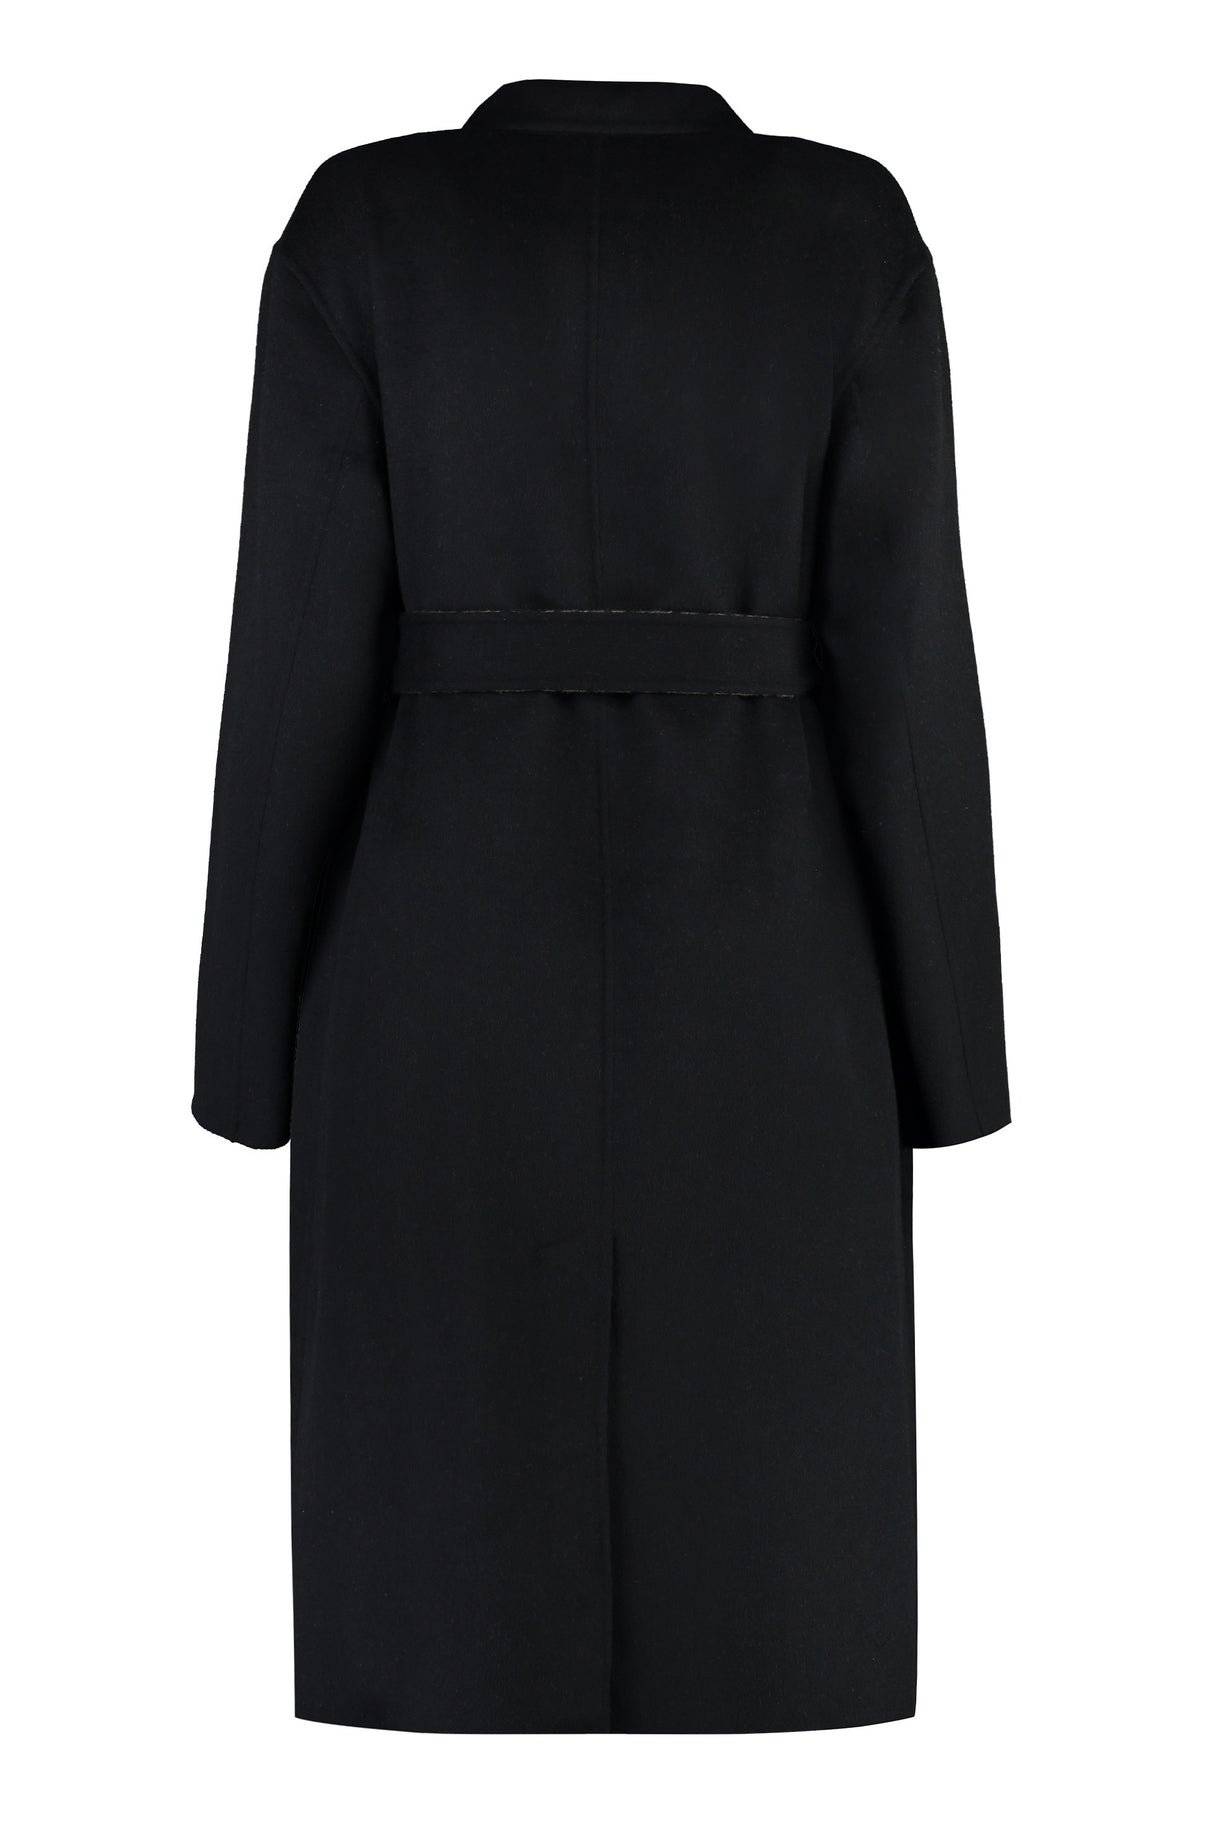 黑色雙排扣羊毛混紡女式外套-FW23